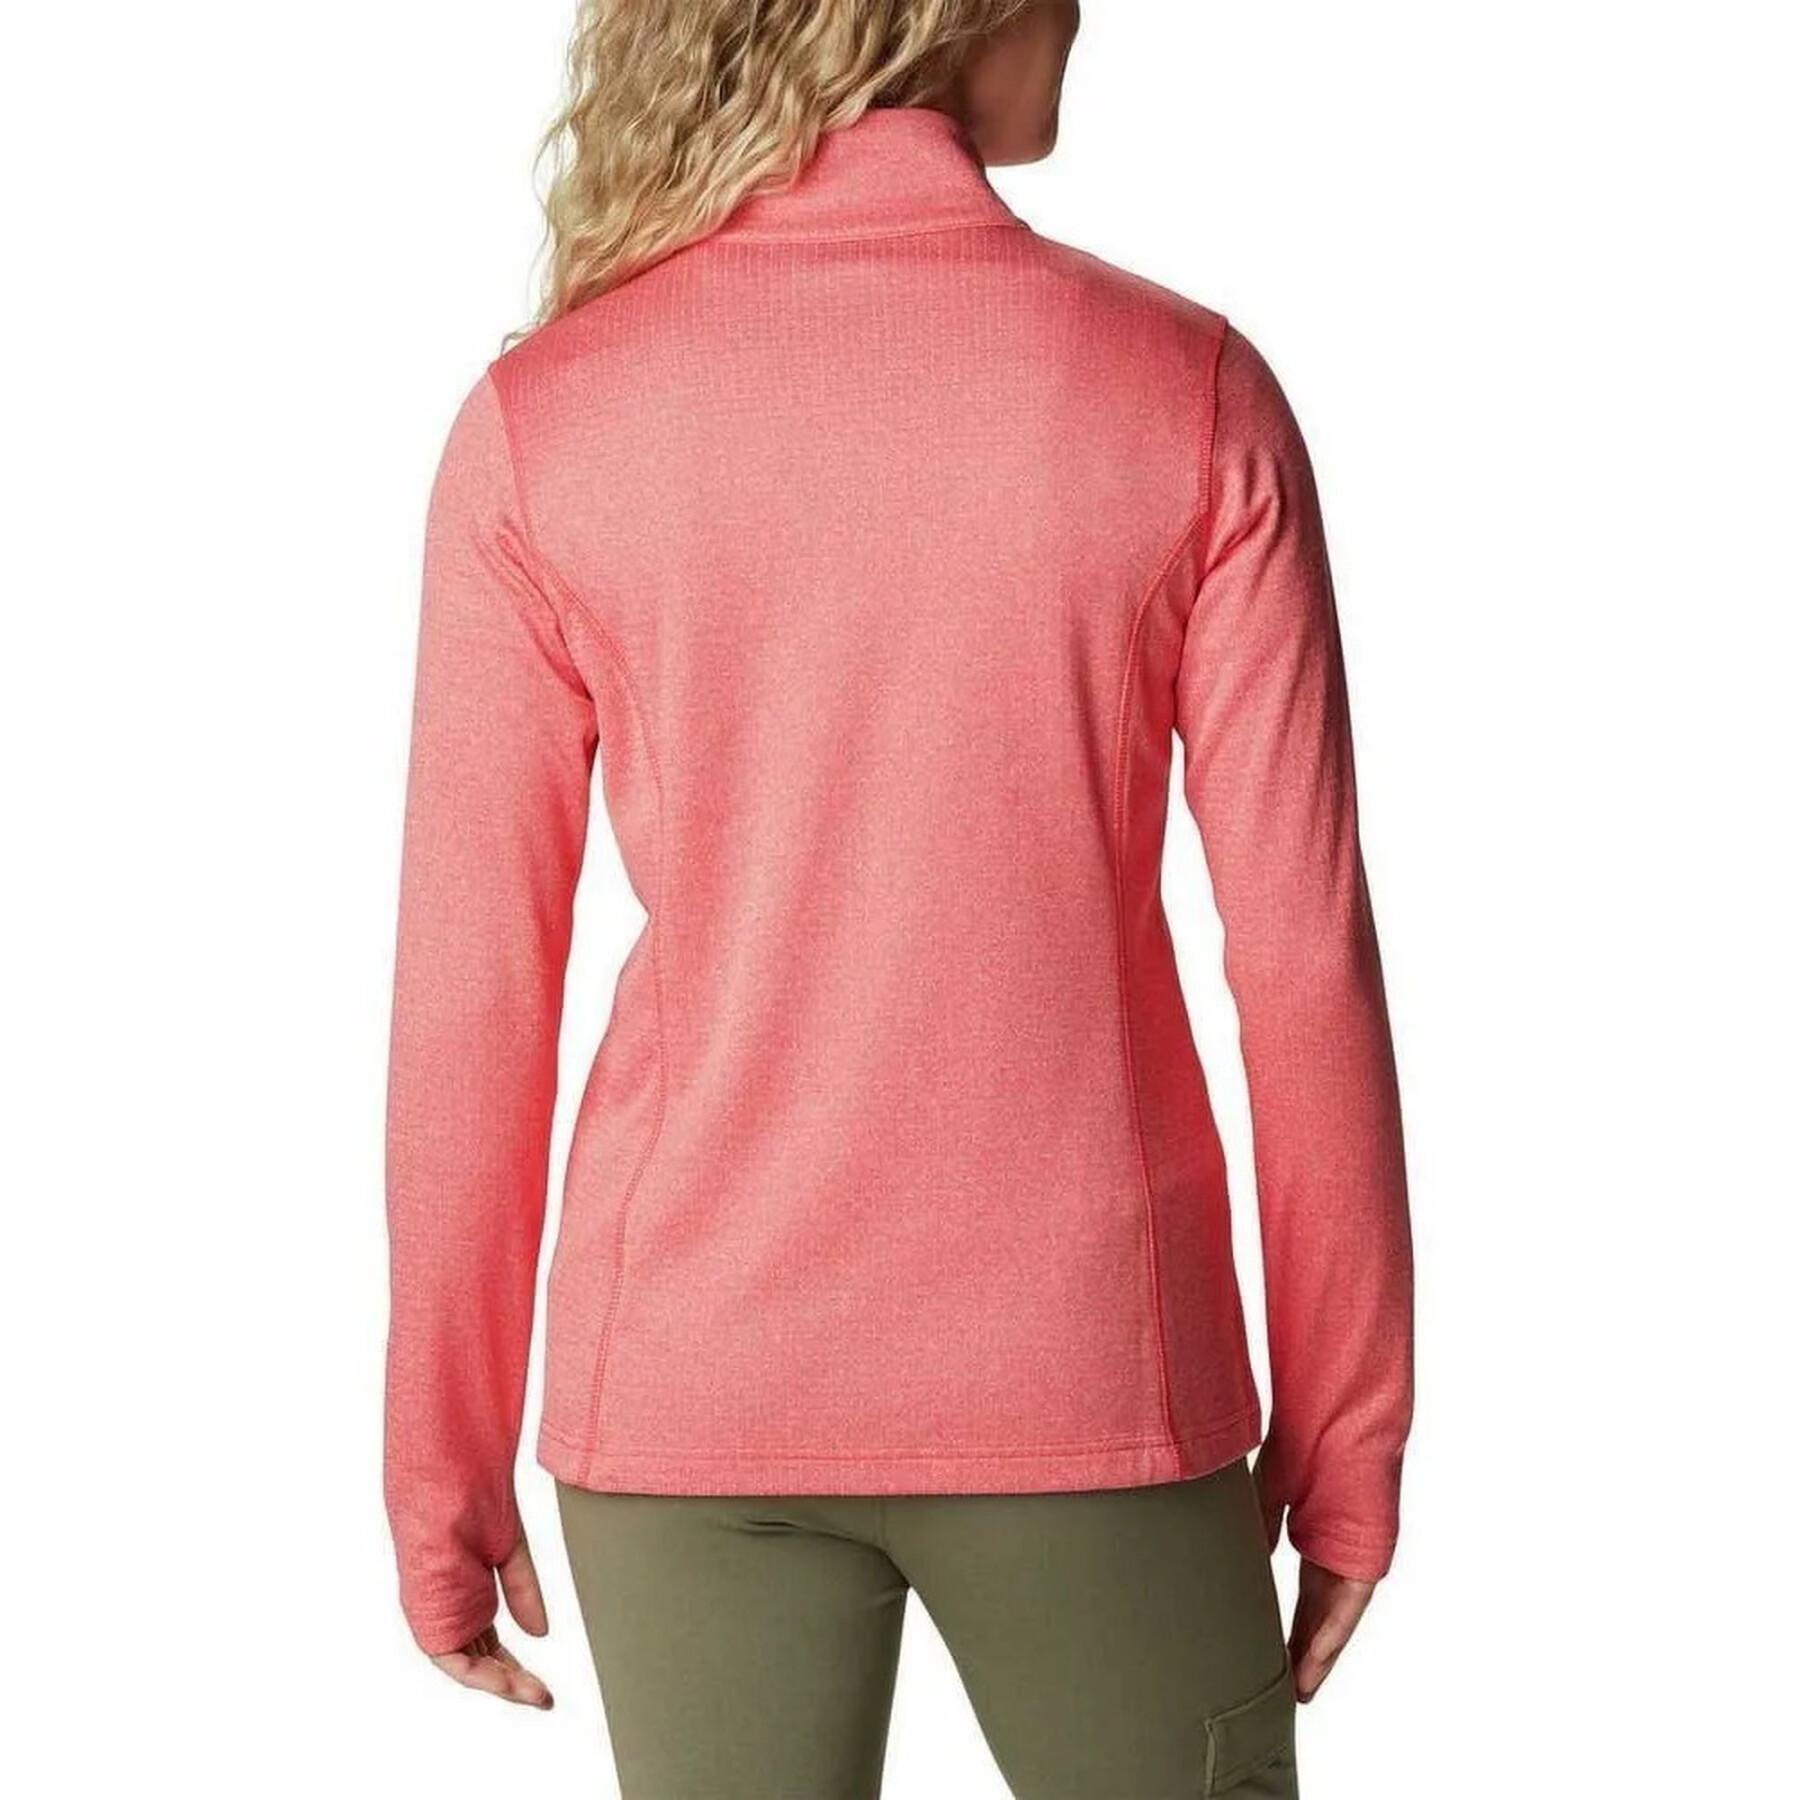 Women's full-zip sweatshirt Columbia Park View Grid Fleece